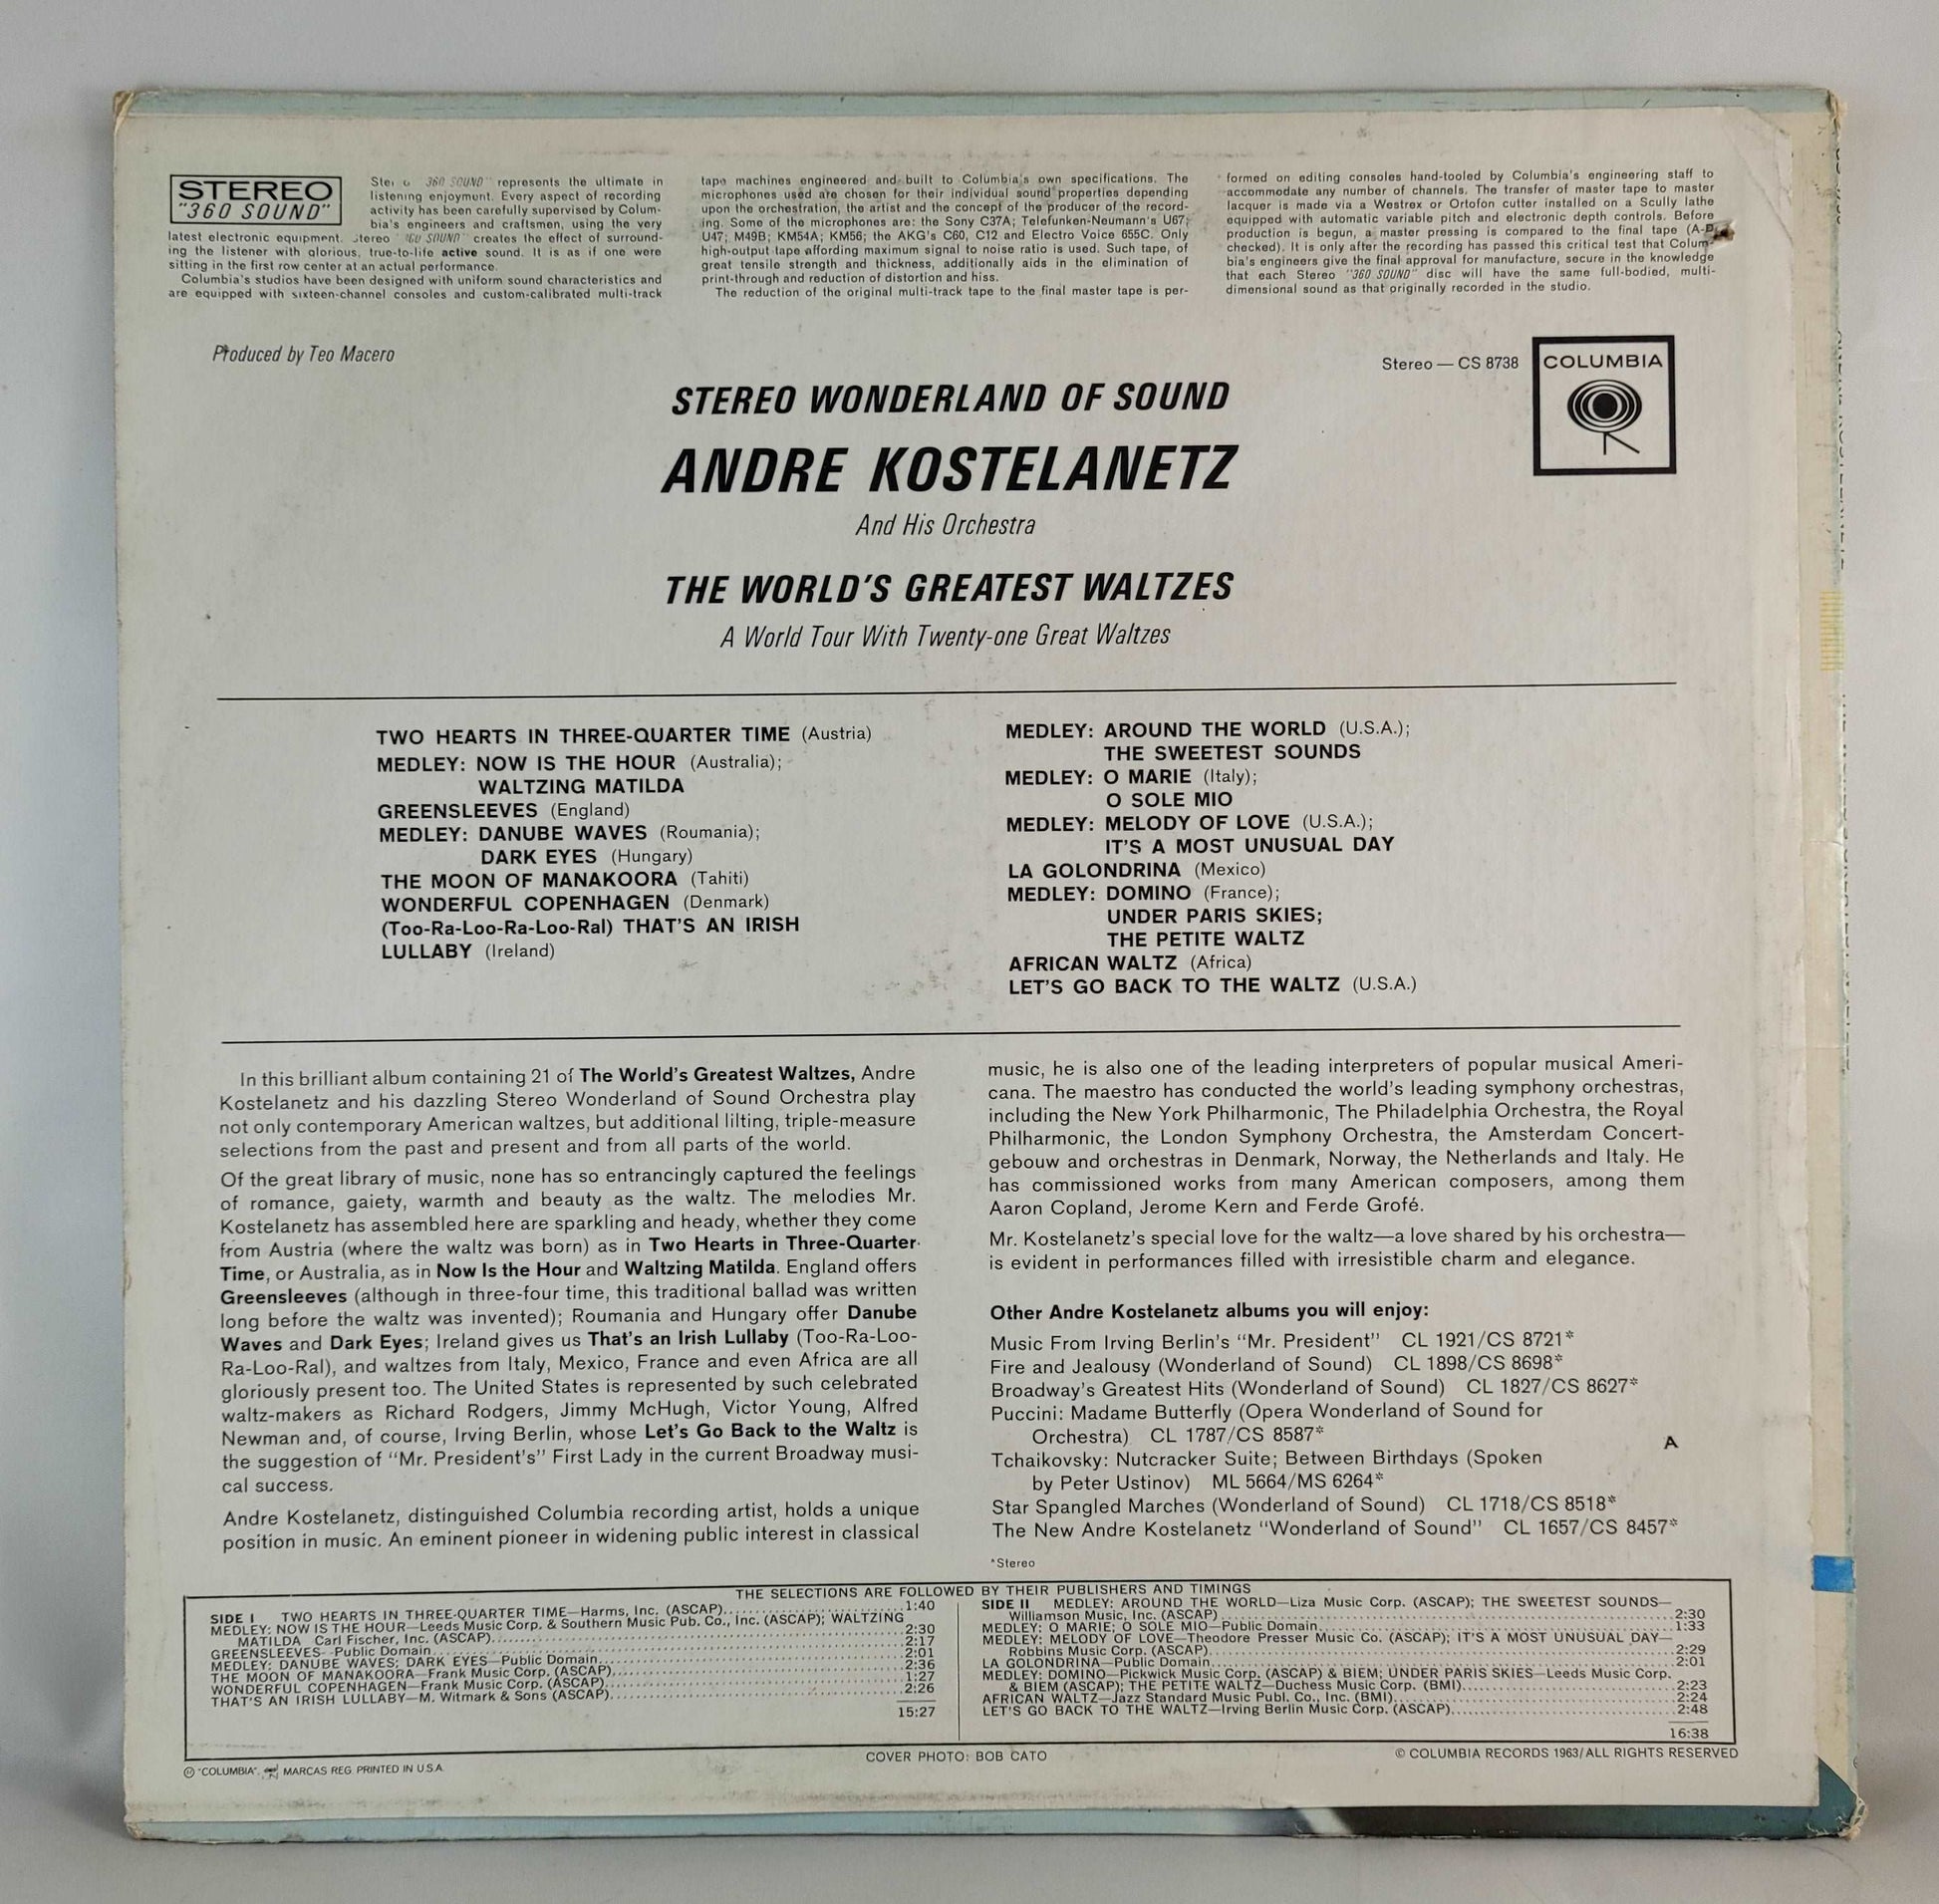 Andre Kostelanetz - Wonderland of Sound - The World's Greatest Waltzes [Vinyl Record LP]